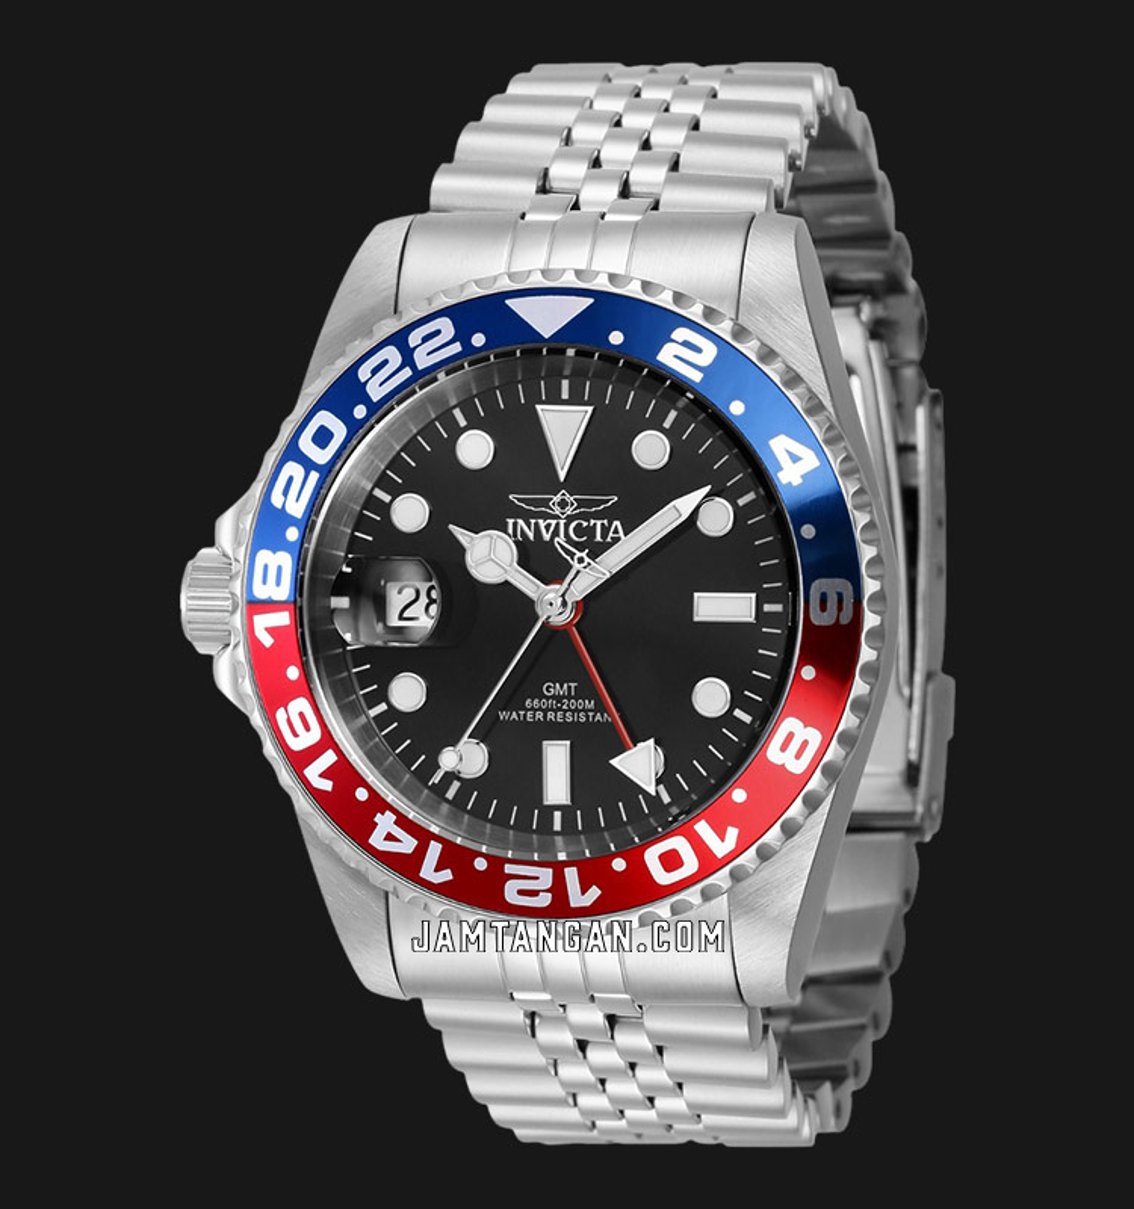 Invicta 43968 merupakan diver watch dengan komplikasi GMT